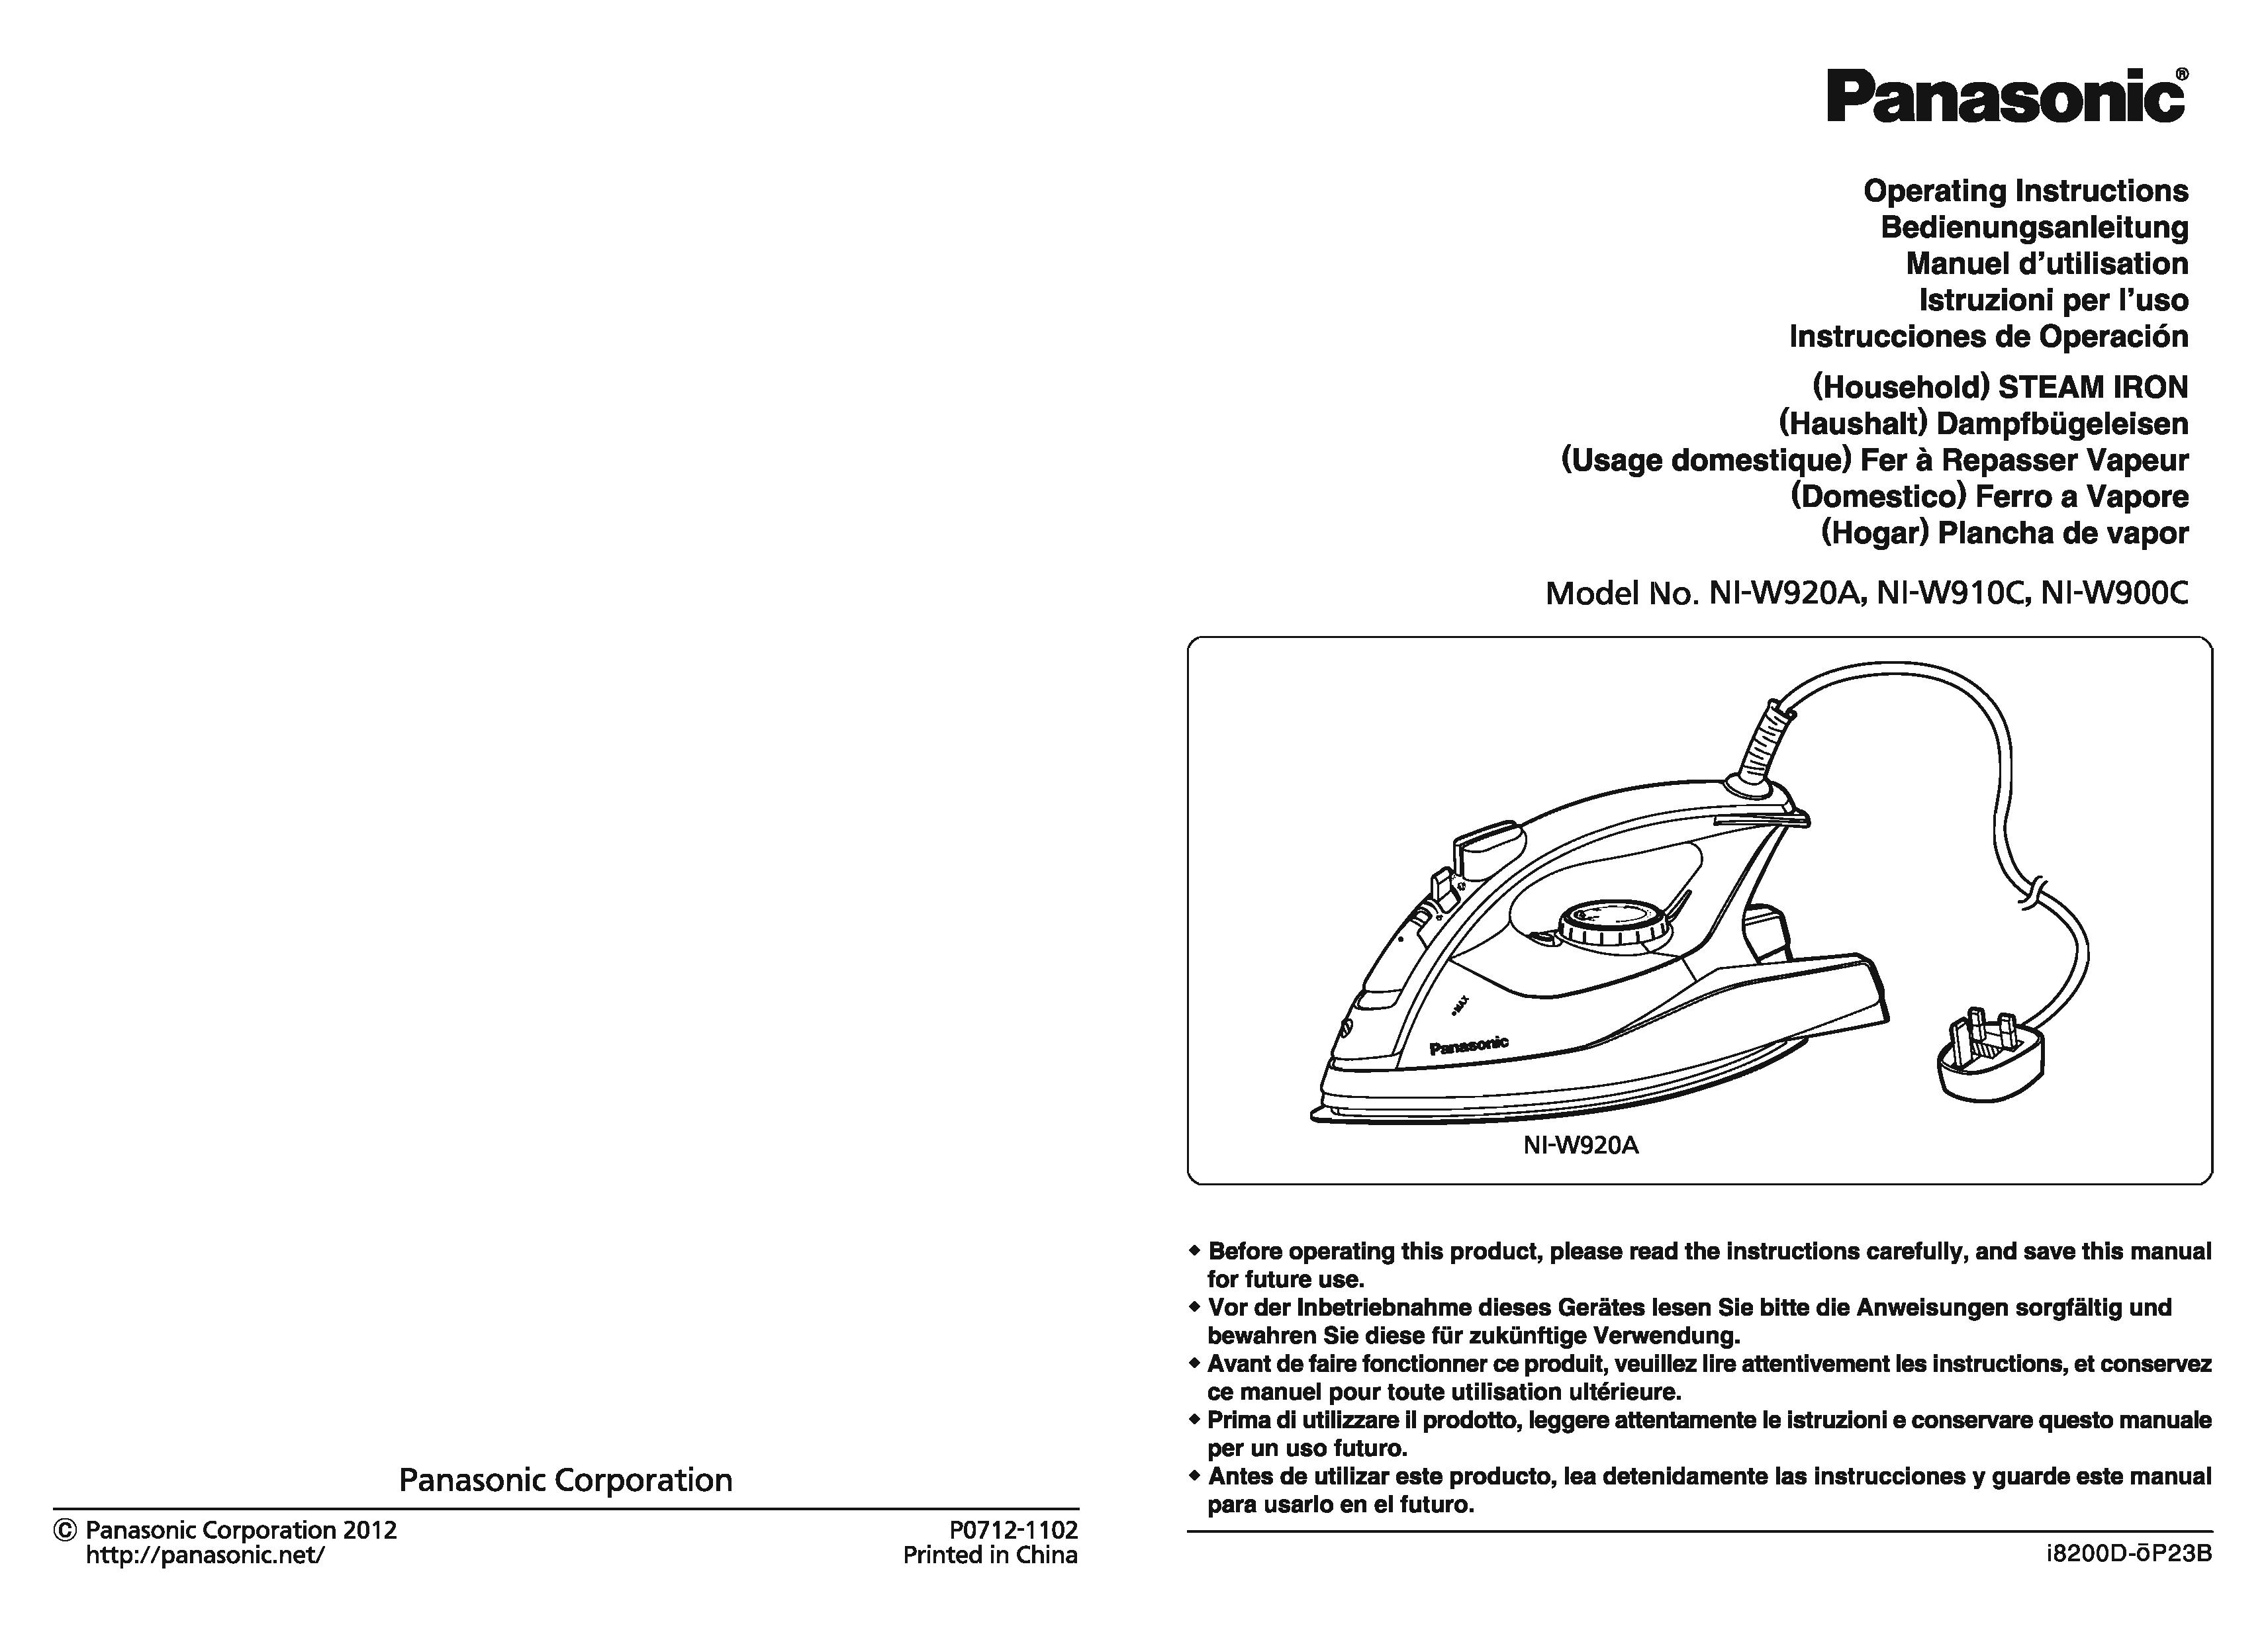 Panasonic NI-W910C Iron User Manual